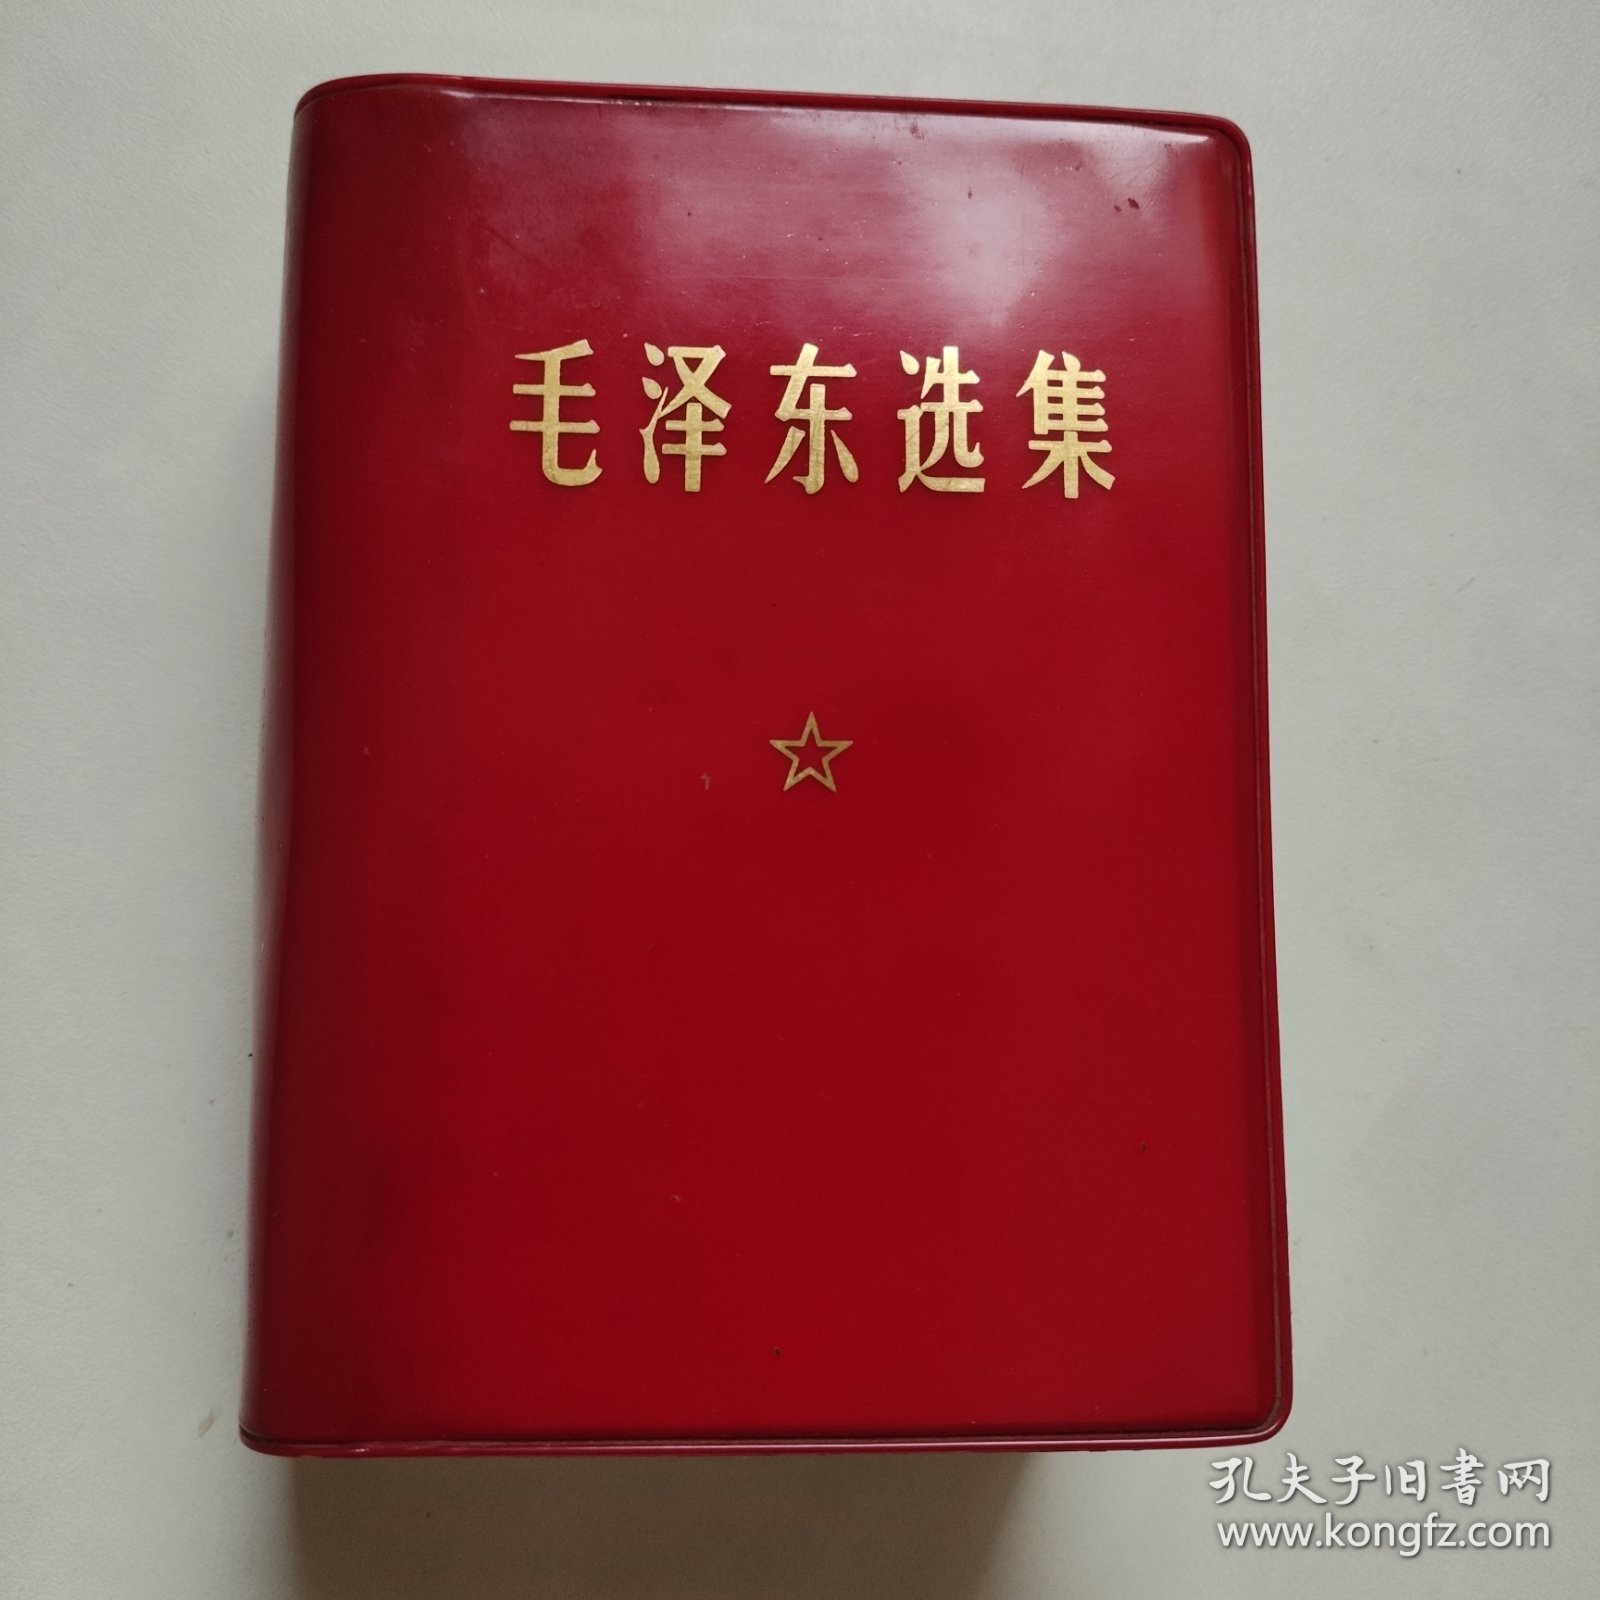 毛泽东选集 一卷本 红皮软精装 64开 横排袖珍本